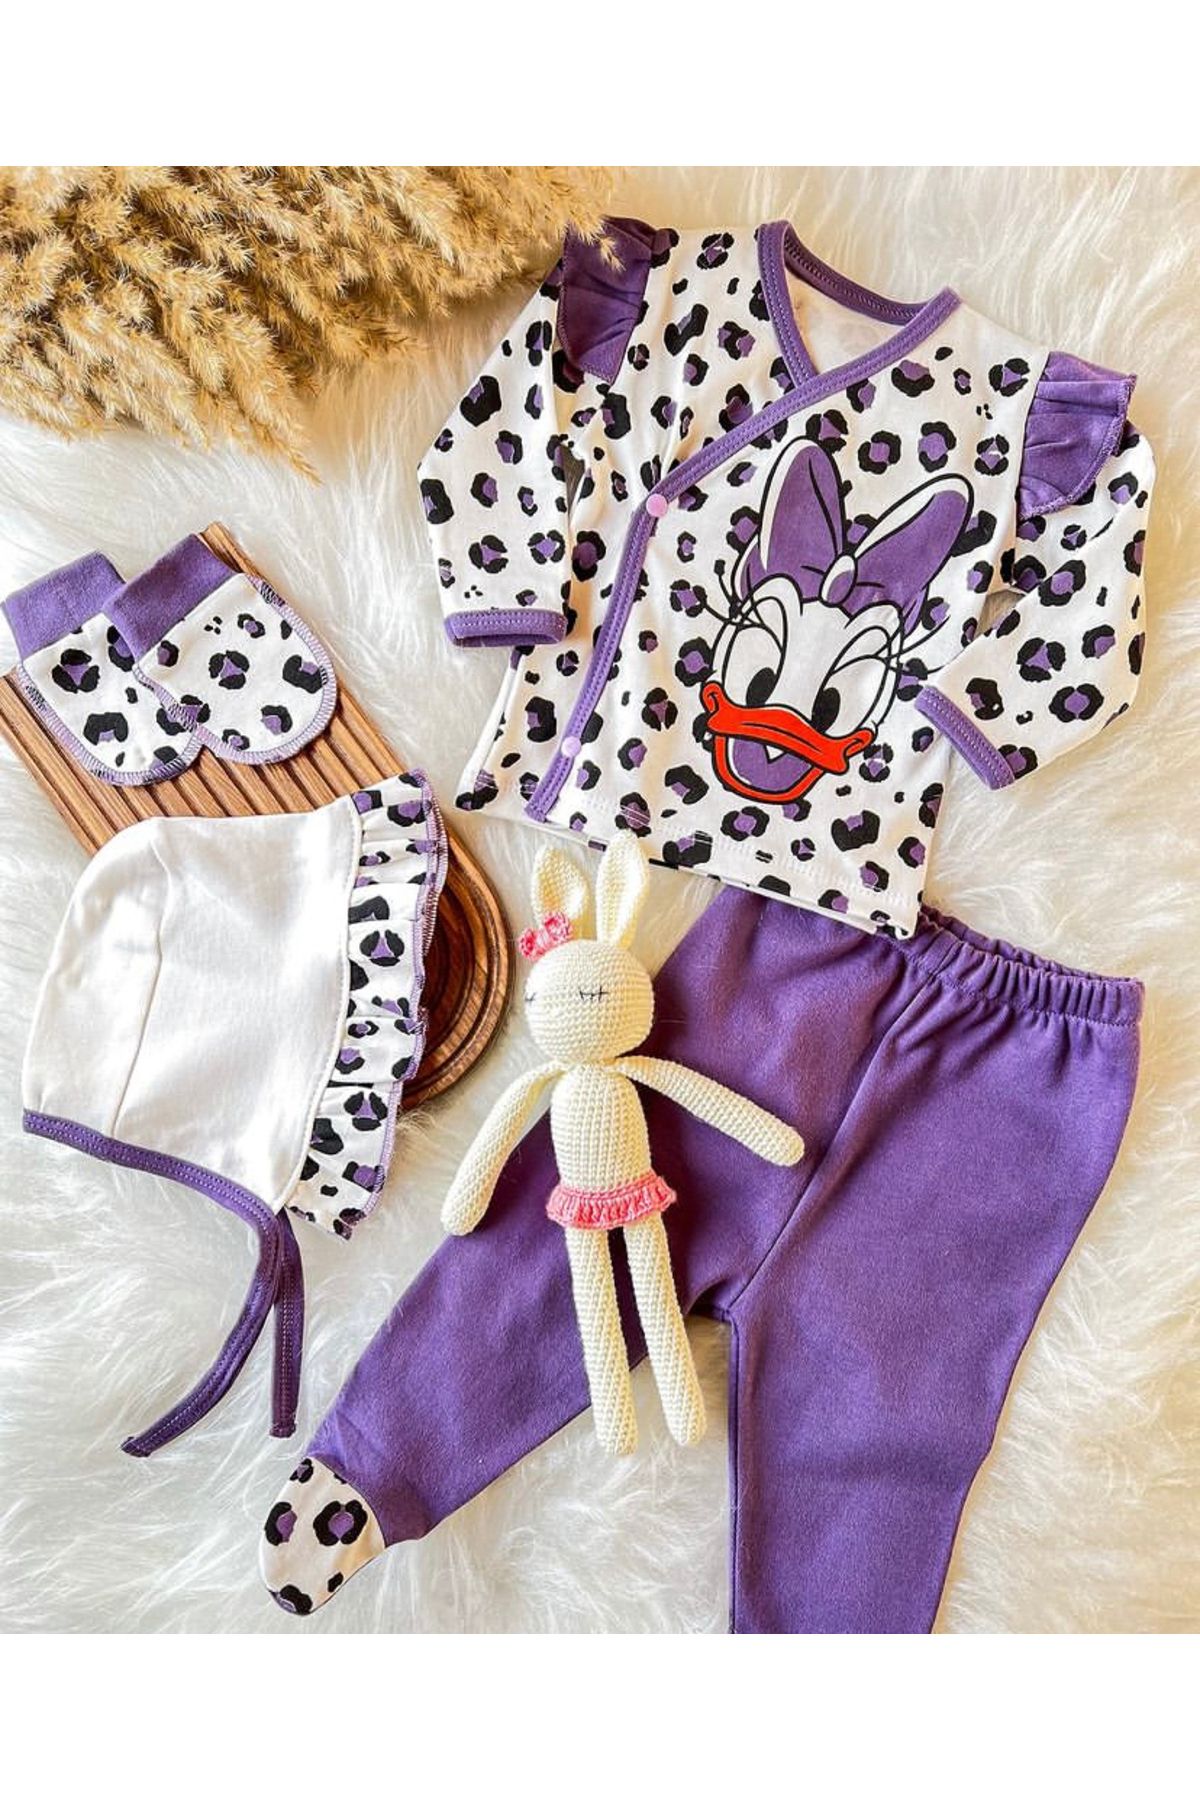 VERONA TARZ Kız Bebek 4lü Hastane Çıkış Seti Mickey Daisy Baskılı Yenidoğan kıyafeti